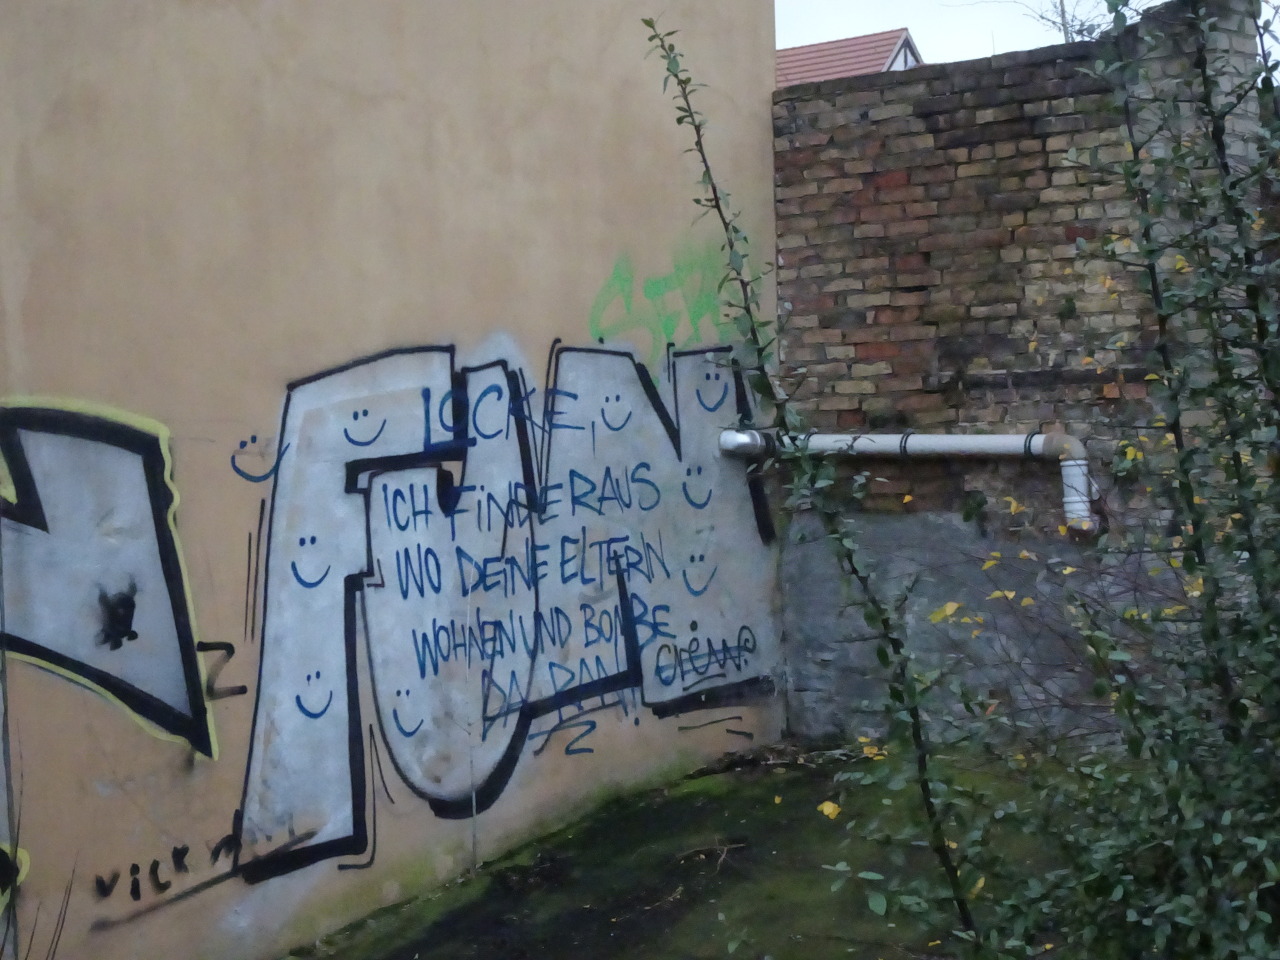 brandenburg 2021 #fun#gecrosst #locke ich finde raus wo deine eltern wohnen und bombe da dran  #brandenburg an der havel #graffiti